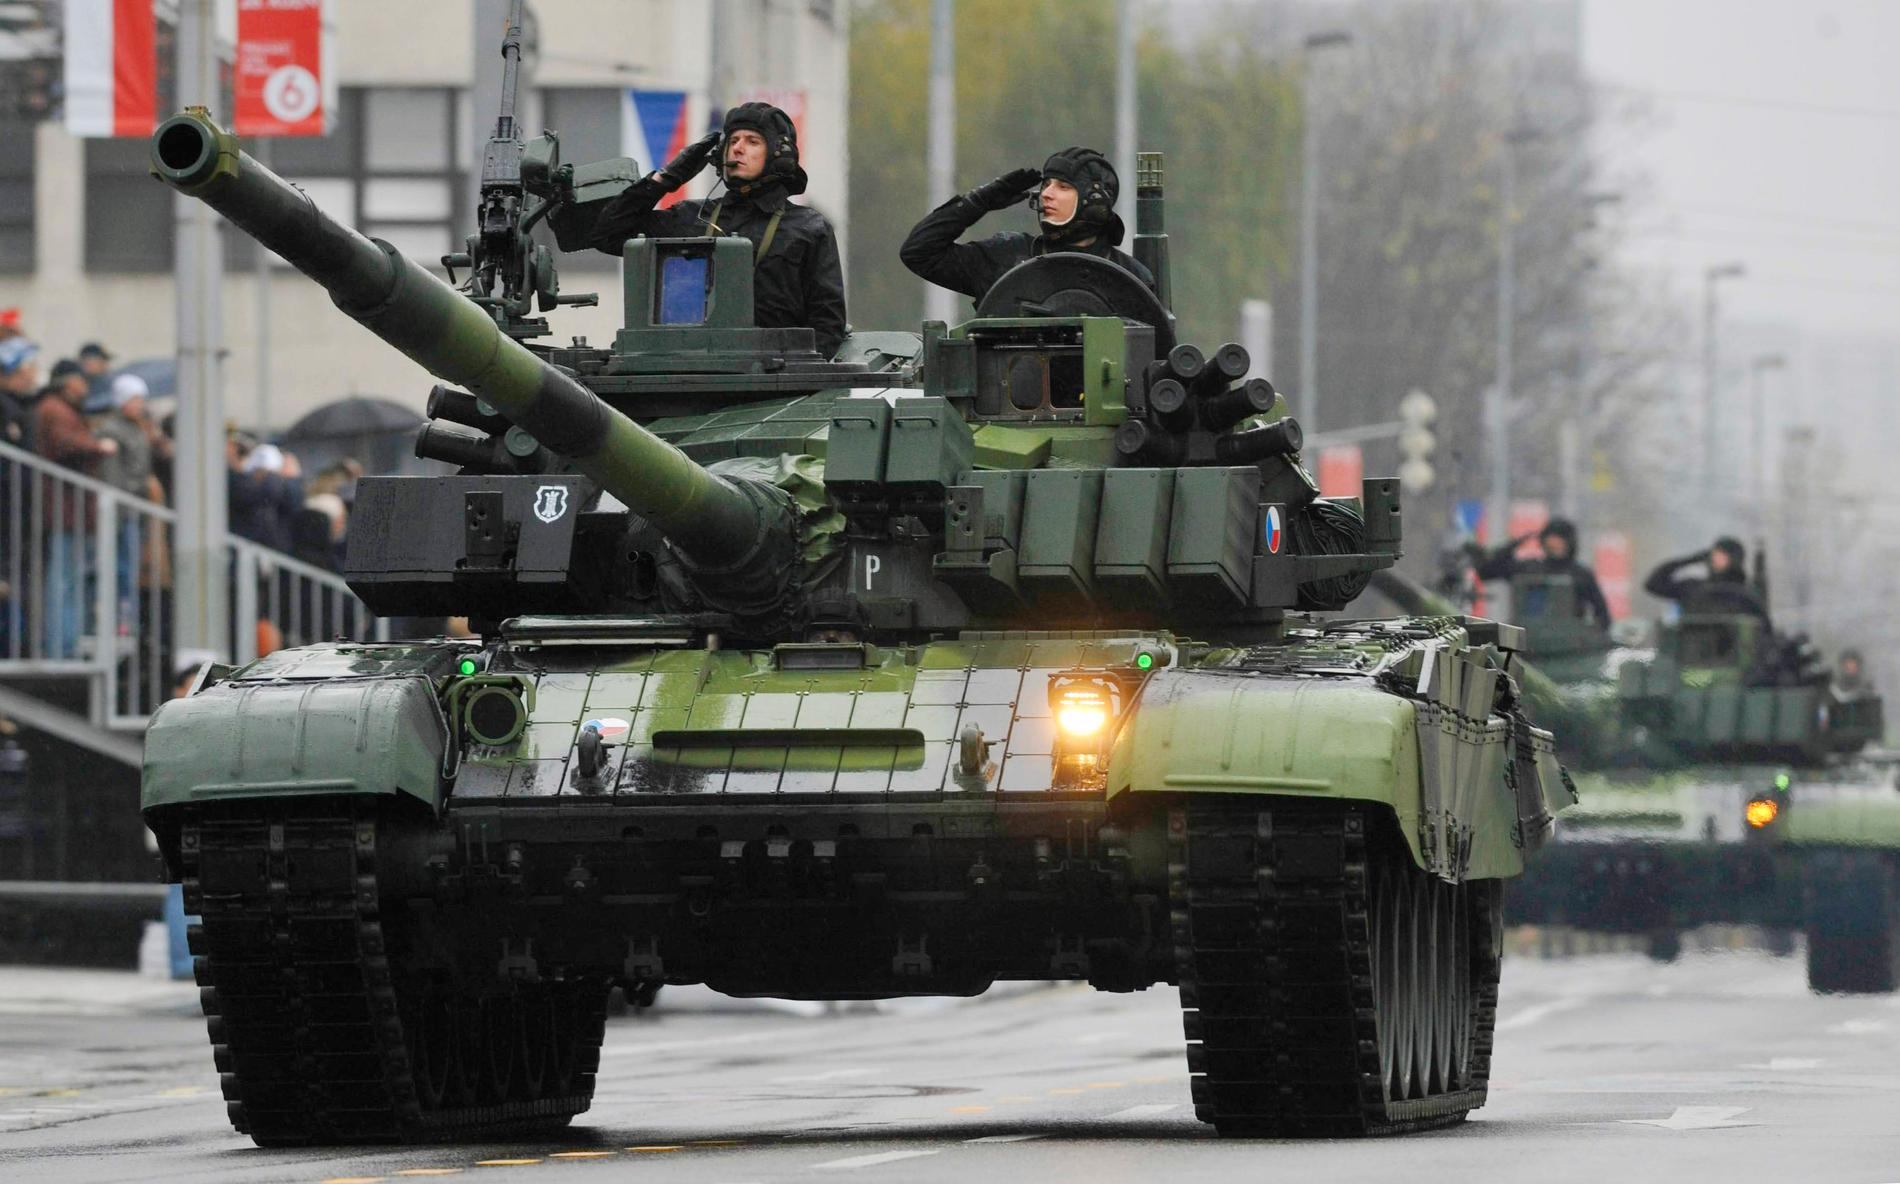 EU:s nya försvarsfond ska framöver kunna användas för att utveckla nya gemensamma vapensystem i EU-länderna. På bilden syns en tjeckisk stridsvagn på parad i Prag. Arkivfoto.